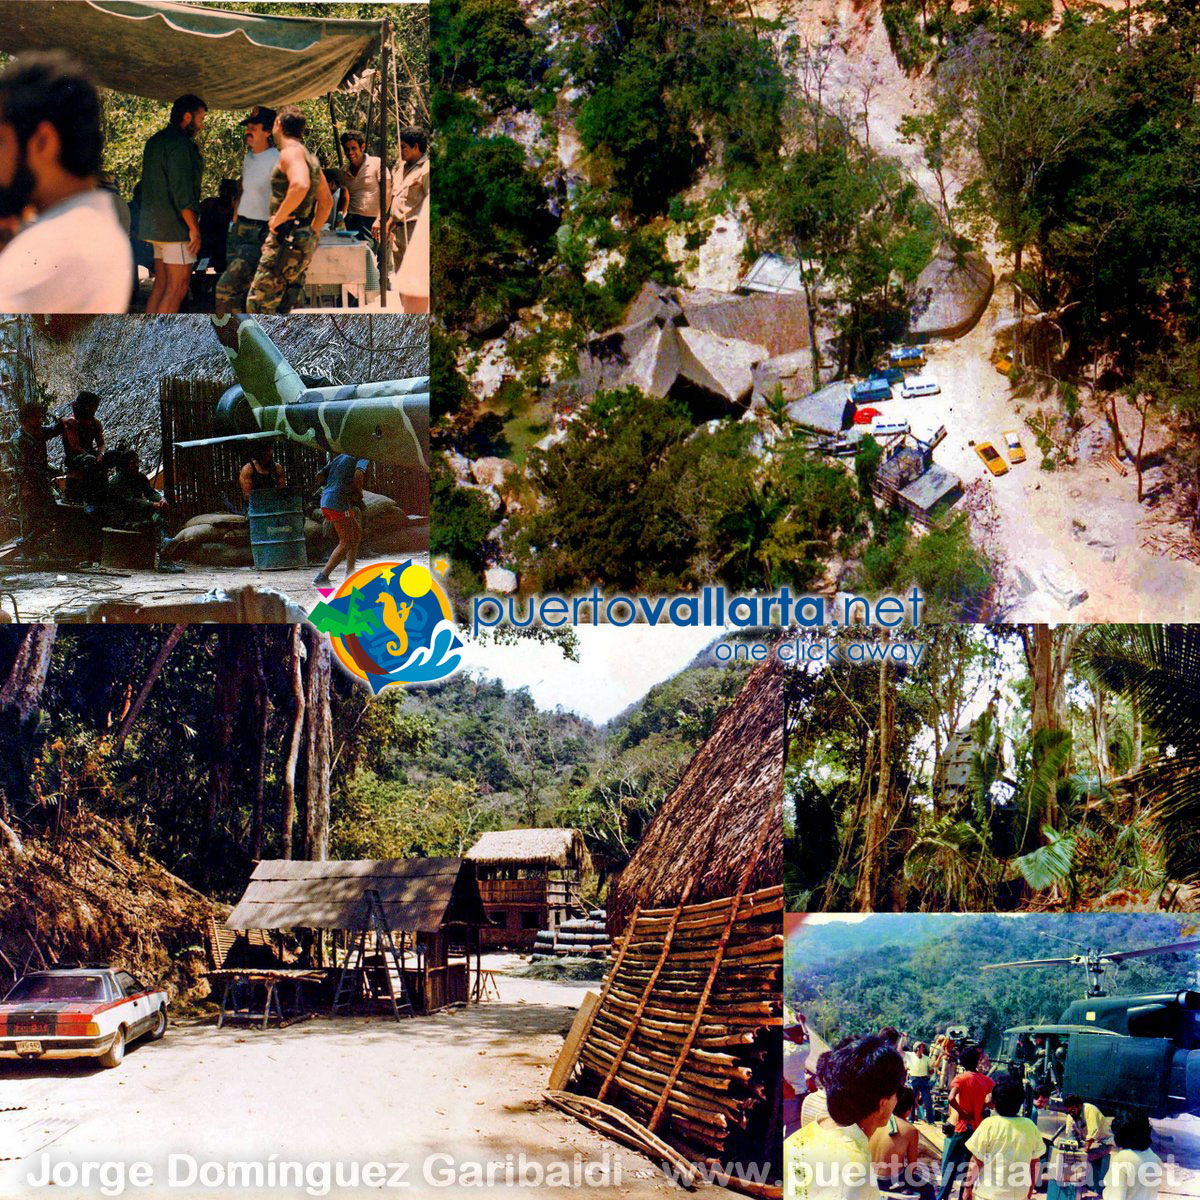 Fotos del set de la película Depredado, El Edén, Mismaloya, Puerto Vallarta